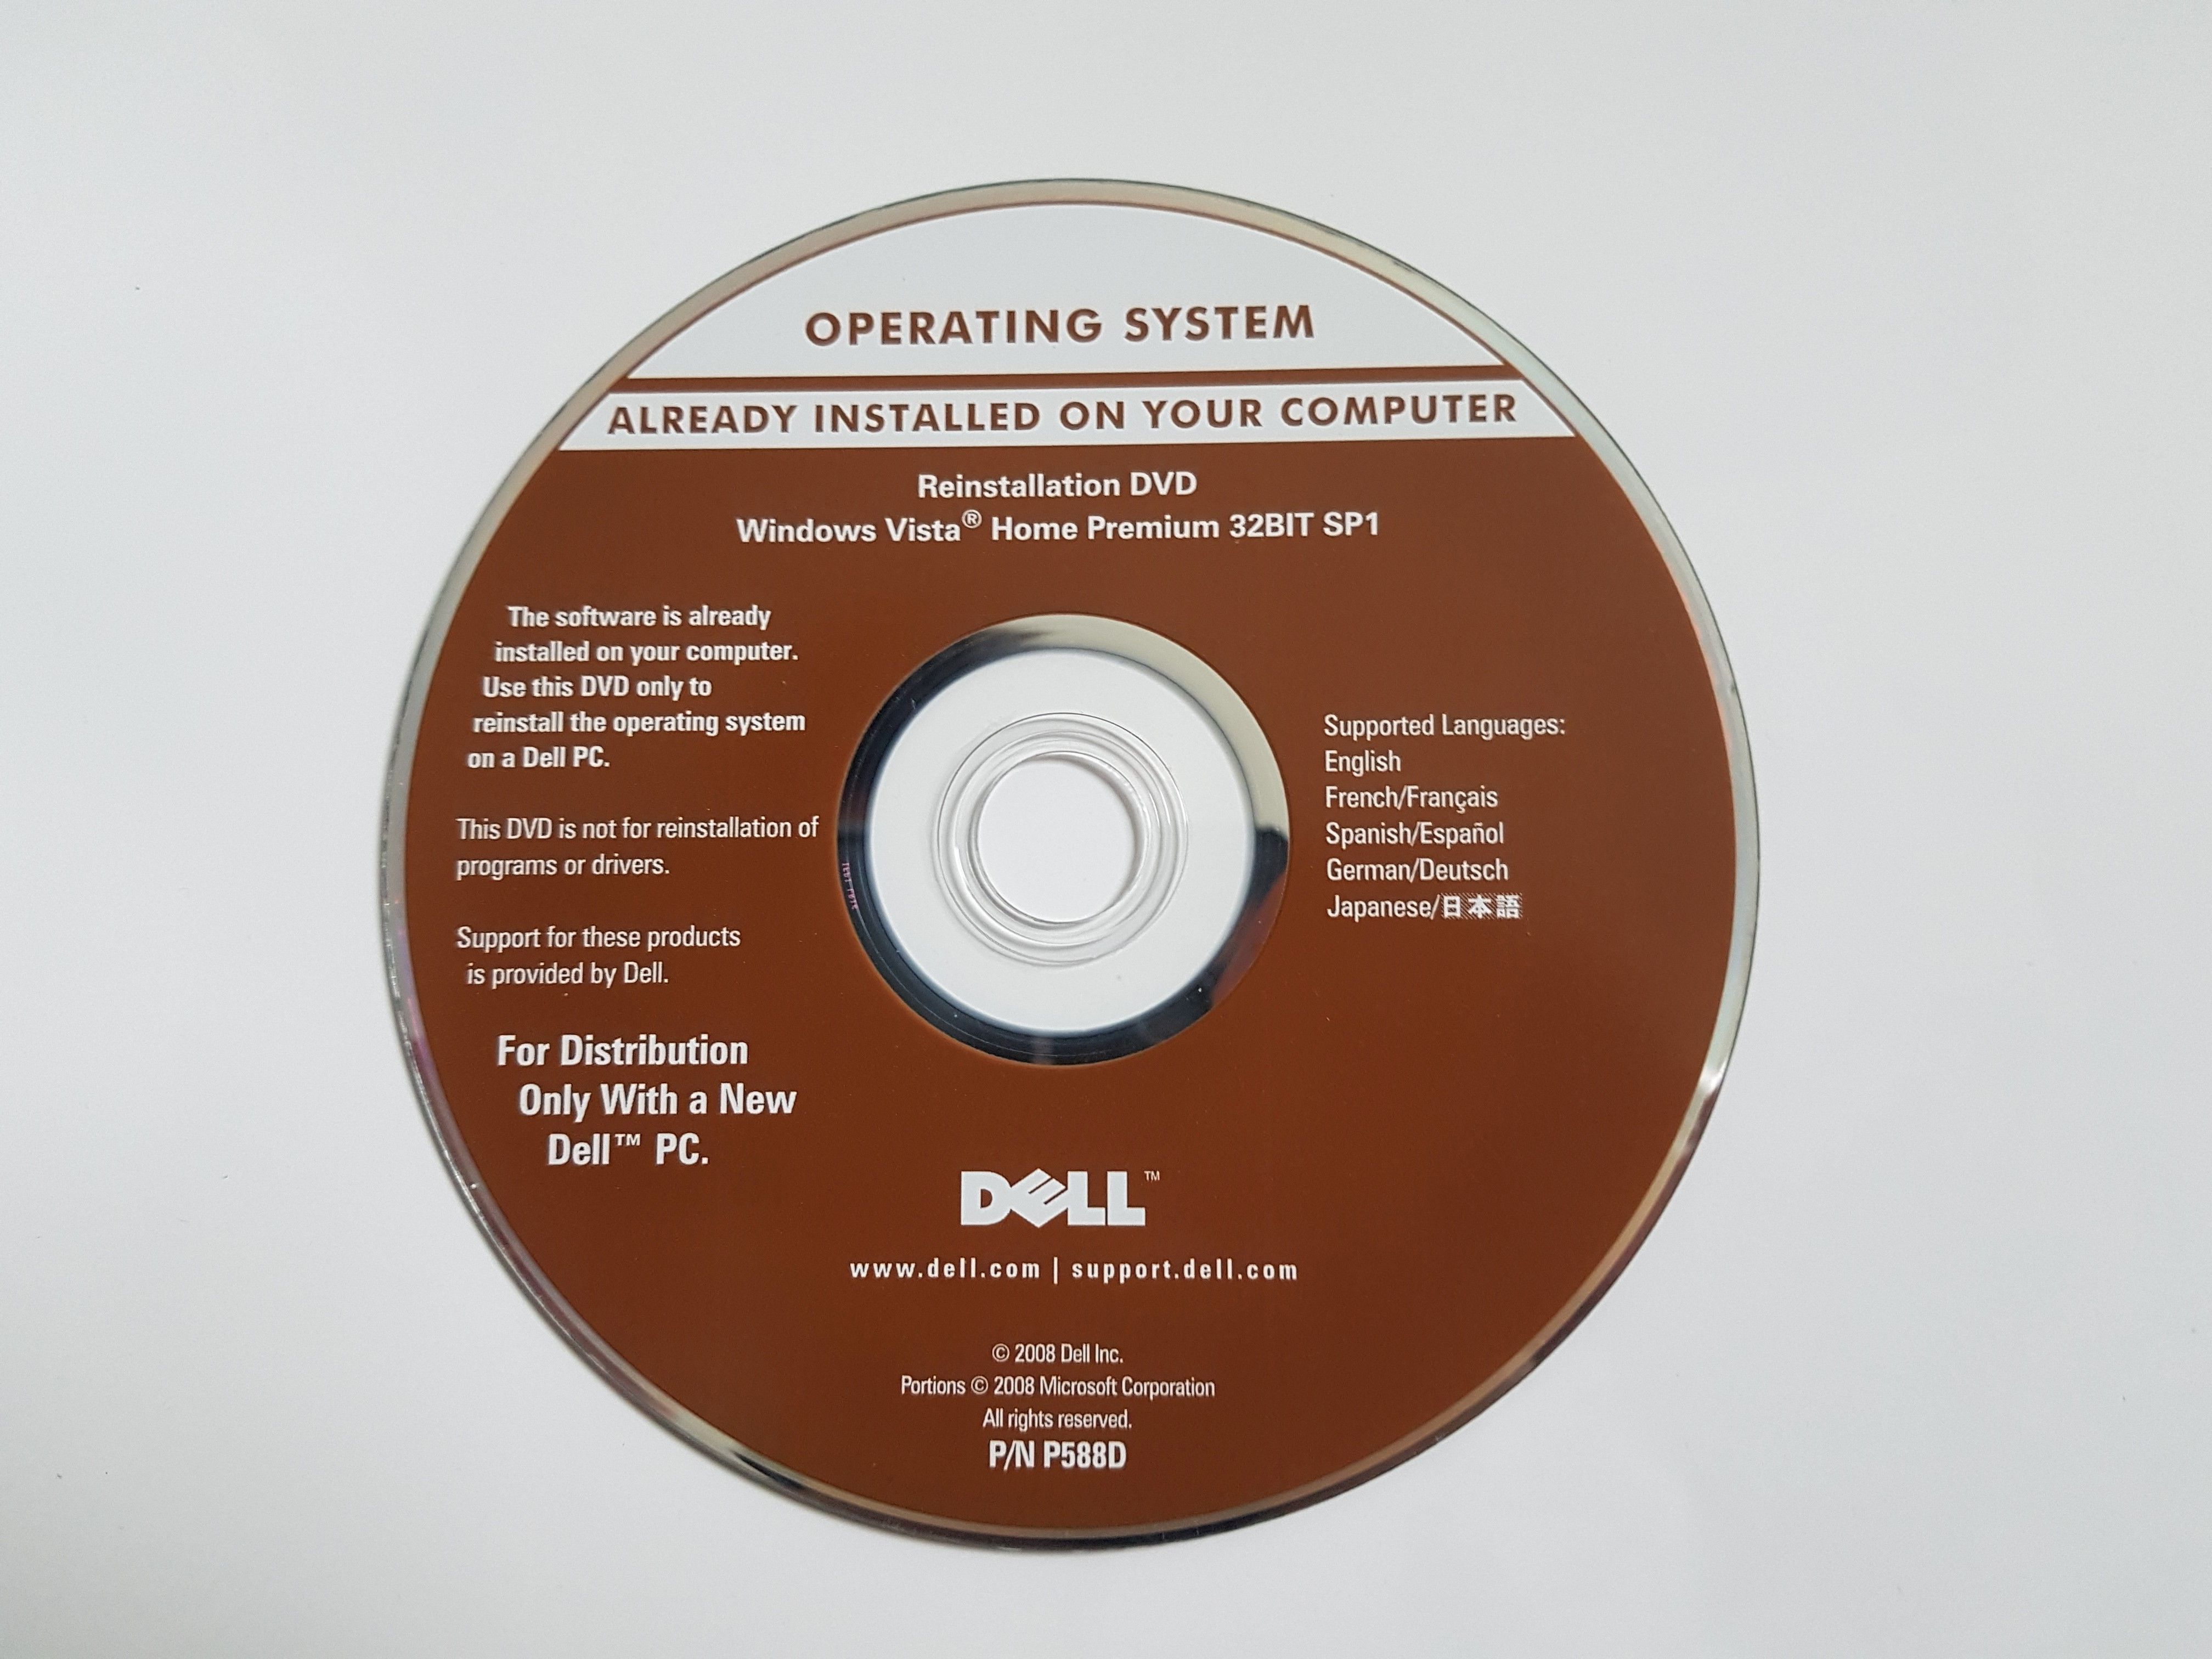 Dell Windows Vista Home Premium 32bit SP1 Reinstallation DVD.